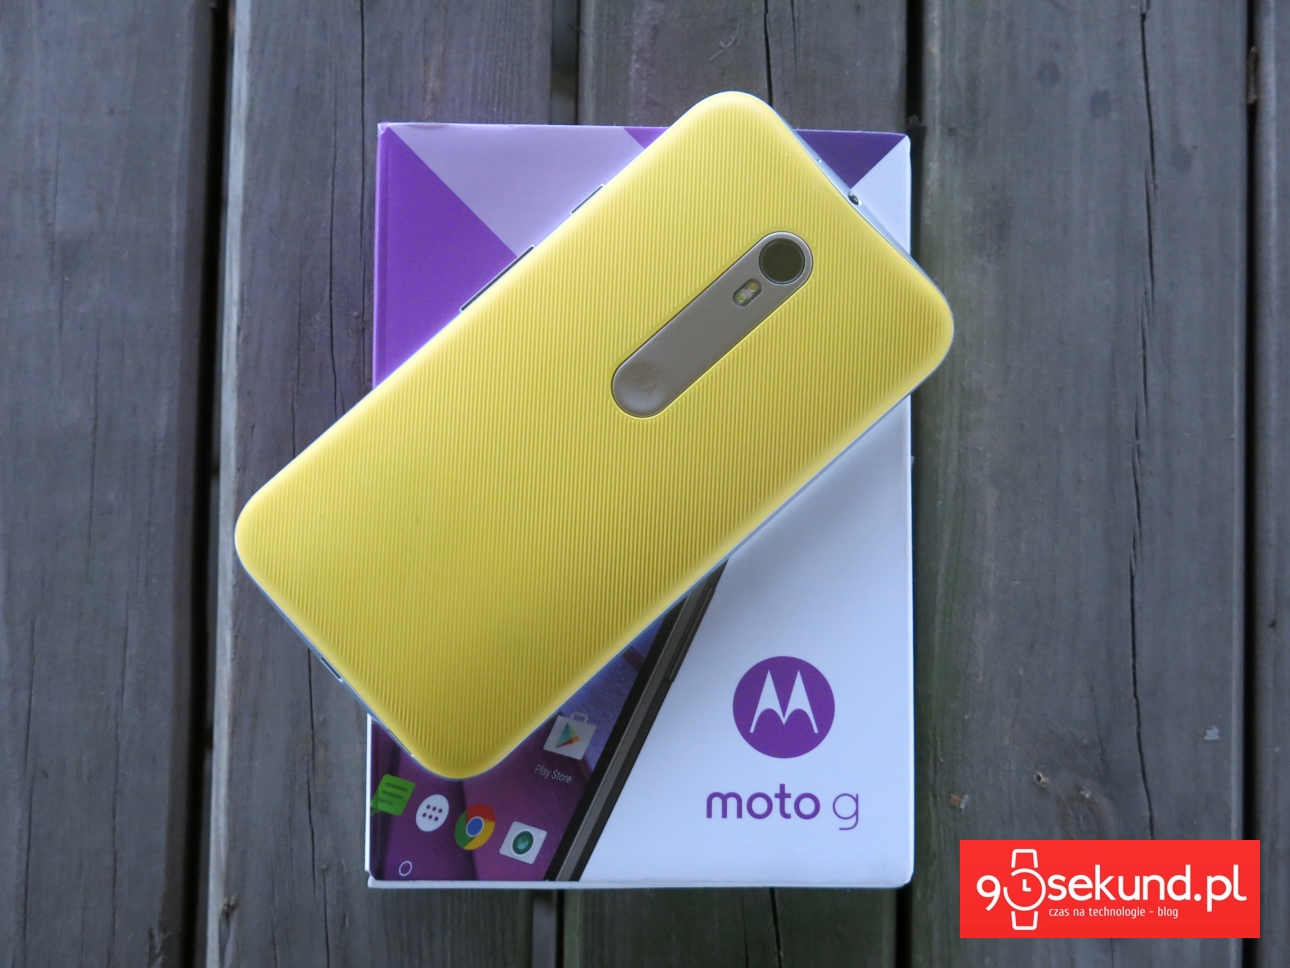 Lenovo Motorola Moto G 3-gen. (2015) - 90sekund.pl